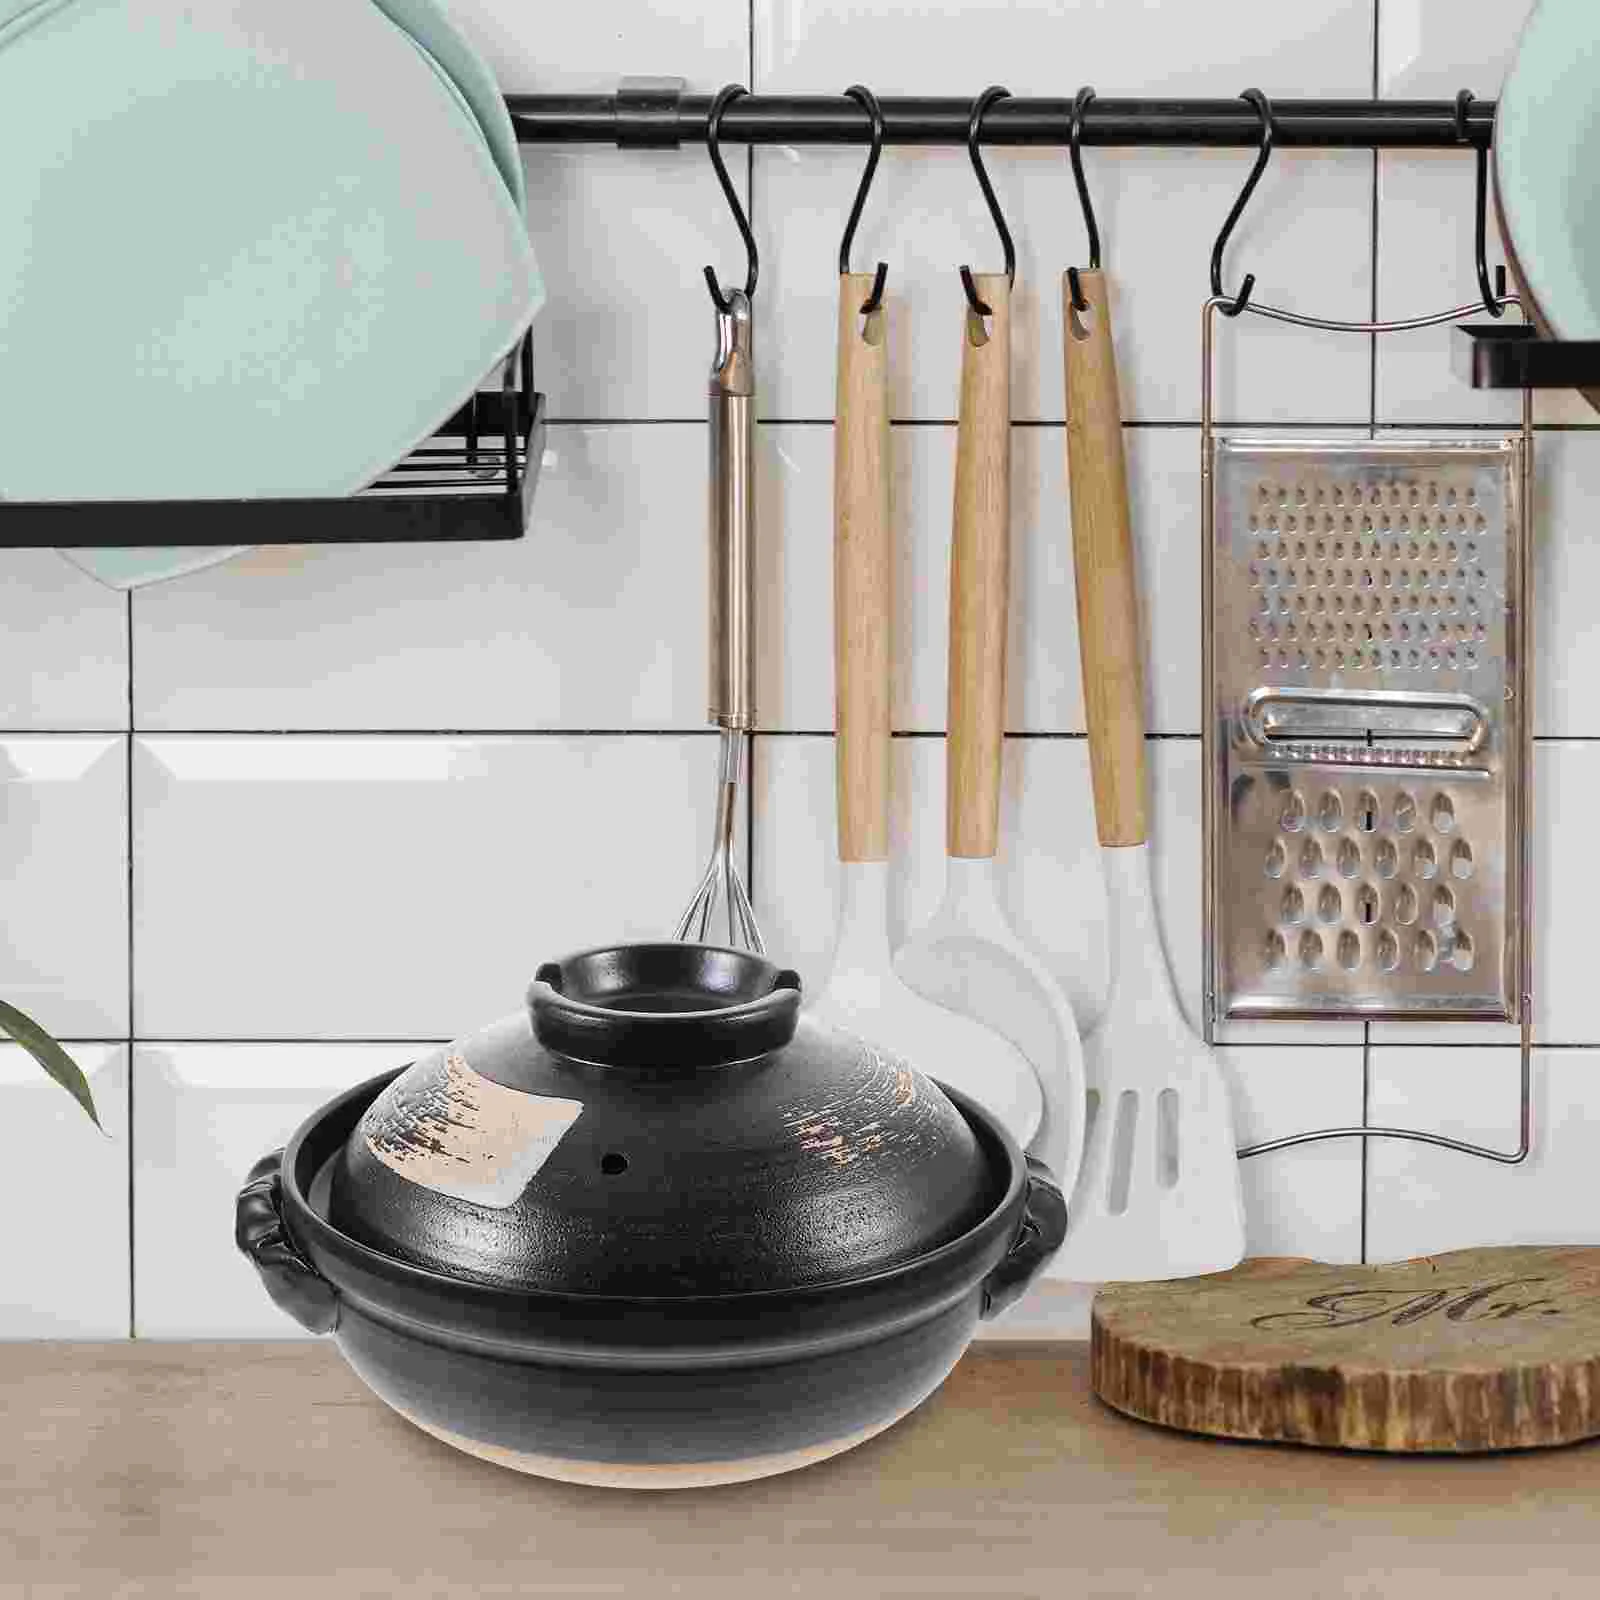 

Кухонная керамическая кастрюля для тушения с крышкой, керамическая кастрюля с ушками, круглая суповая кастрюля, японская кастрюля для горячего приготовления, кастрюля для кухни и дома